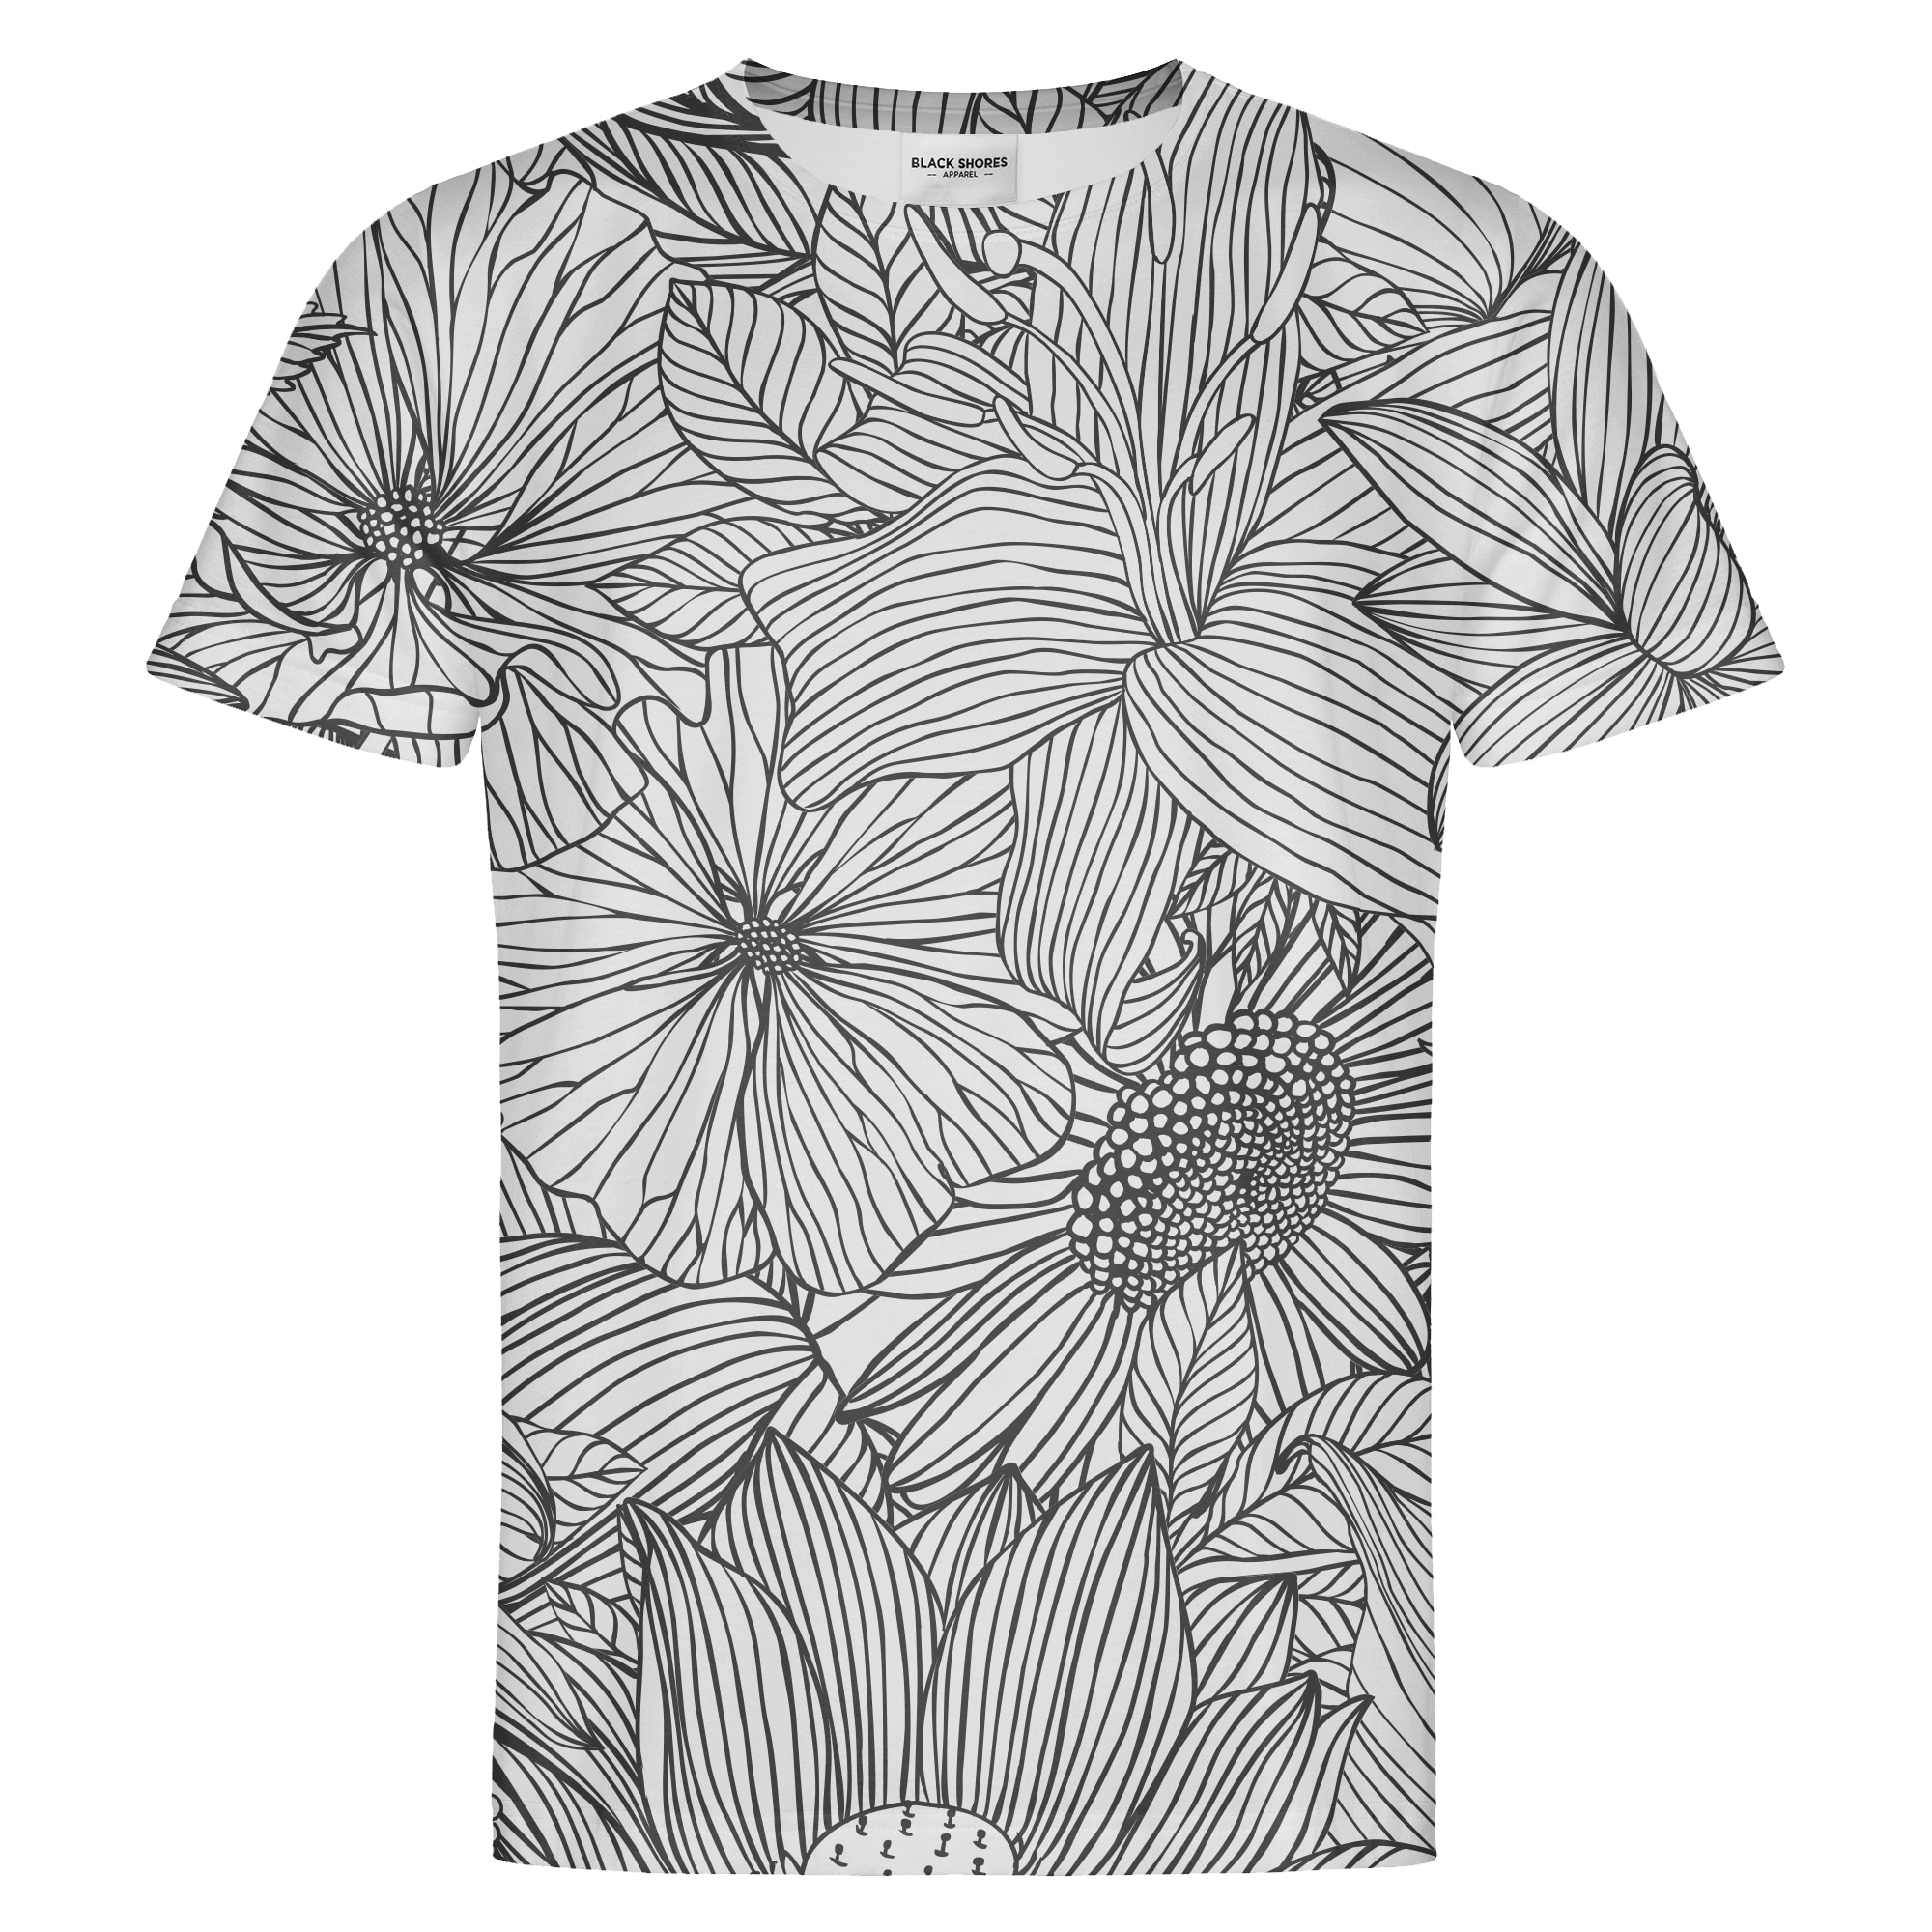 Levně B&W Flowers T-shirt – Black Shores